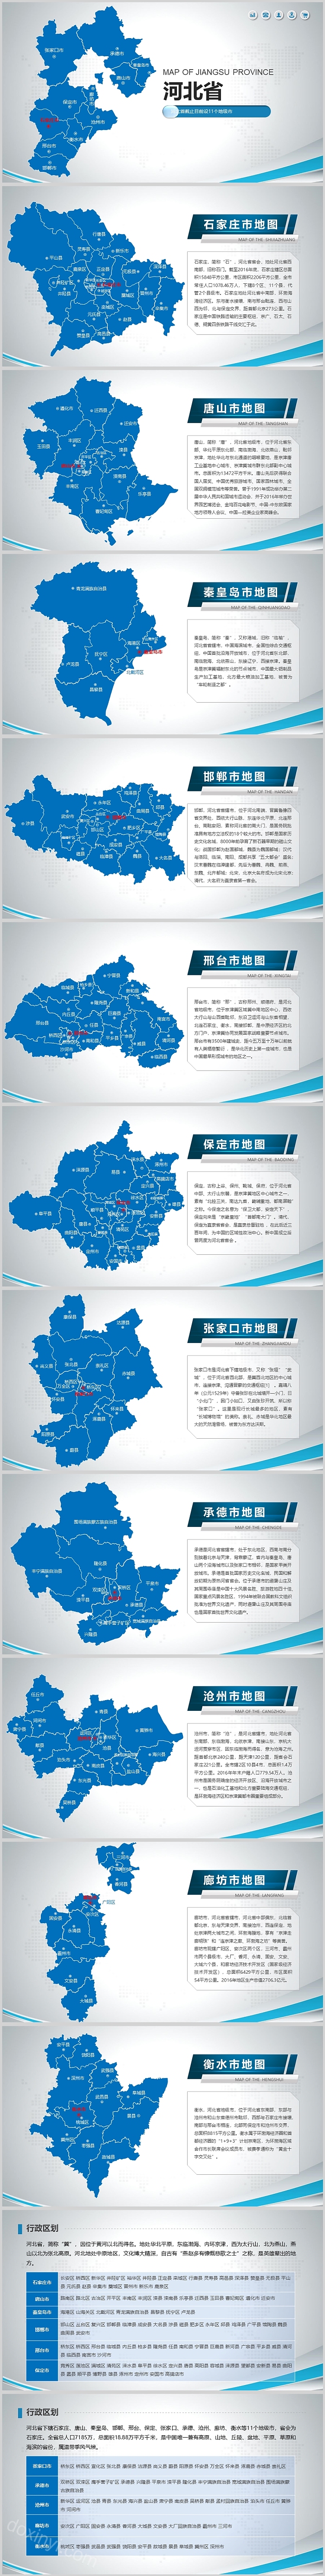 中国地图河北省地图ppt图表